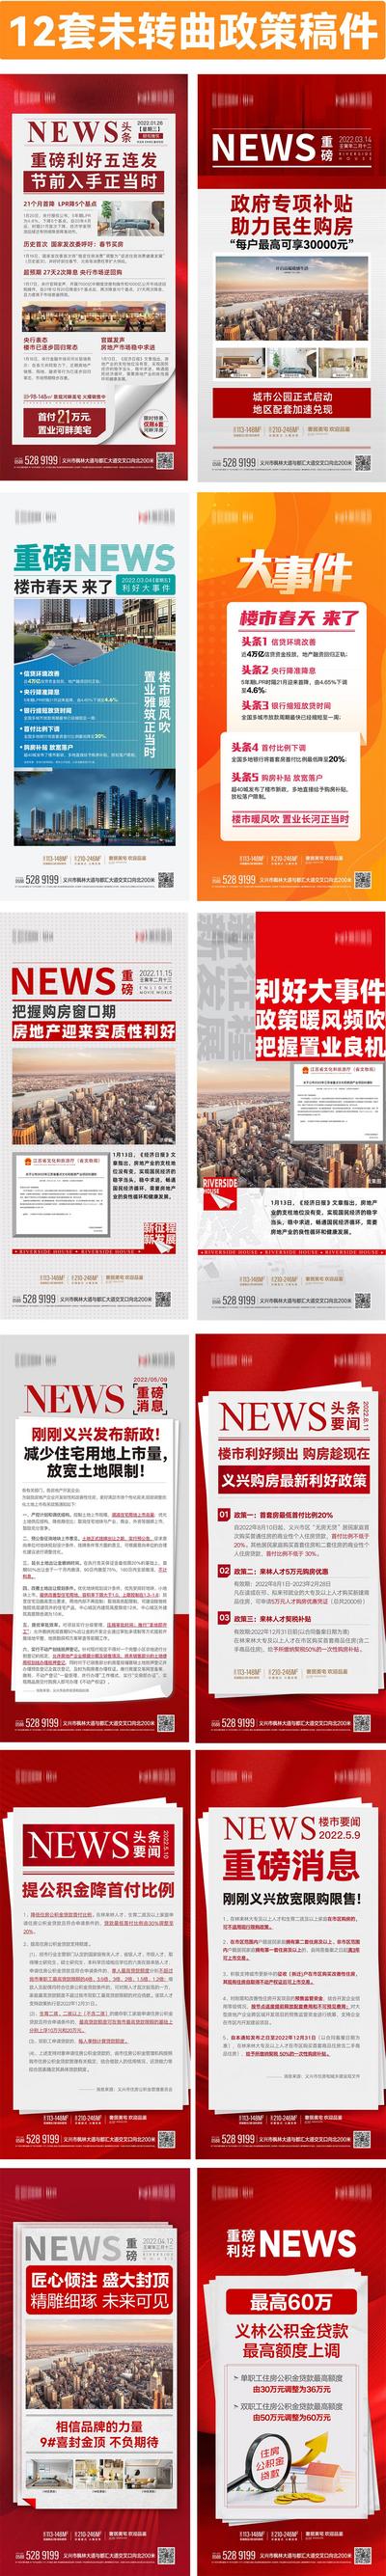 【南门网】海报 房地产 重磅消息 新闻 大事件 政策 利好 快讯 资讯